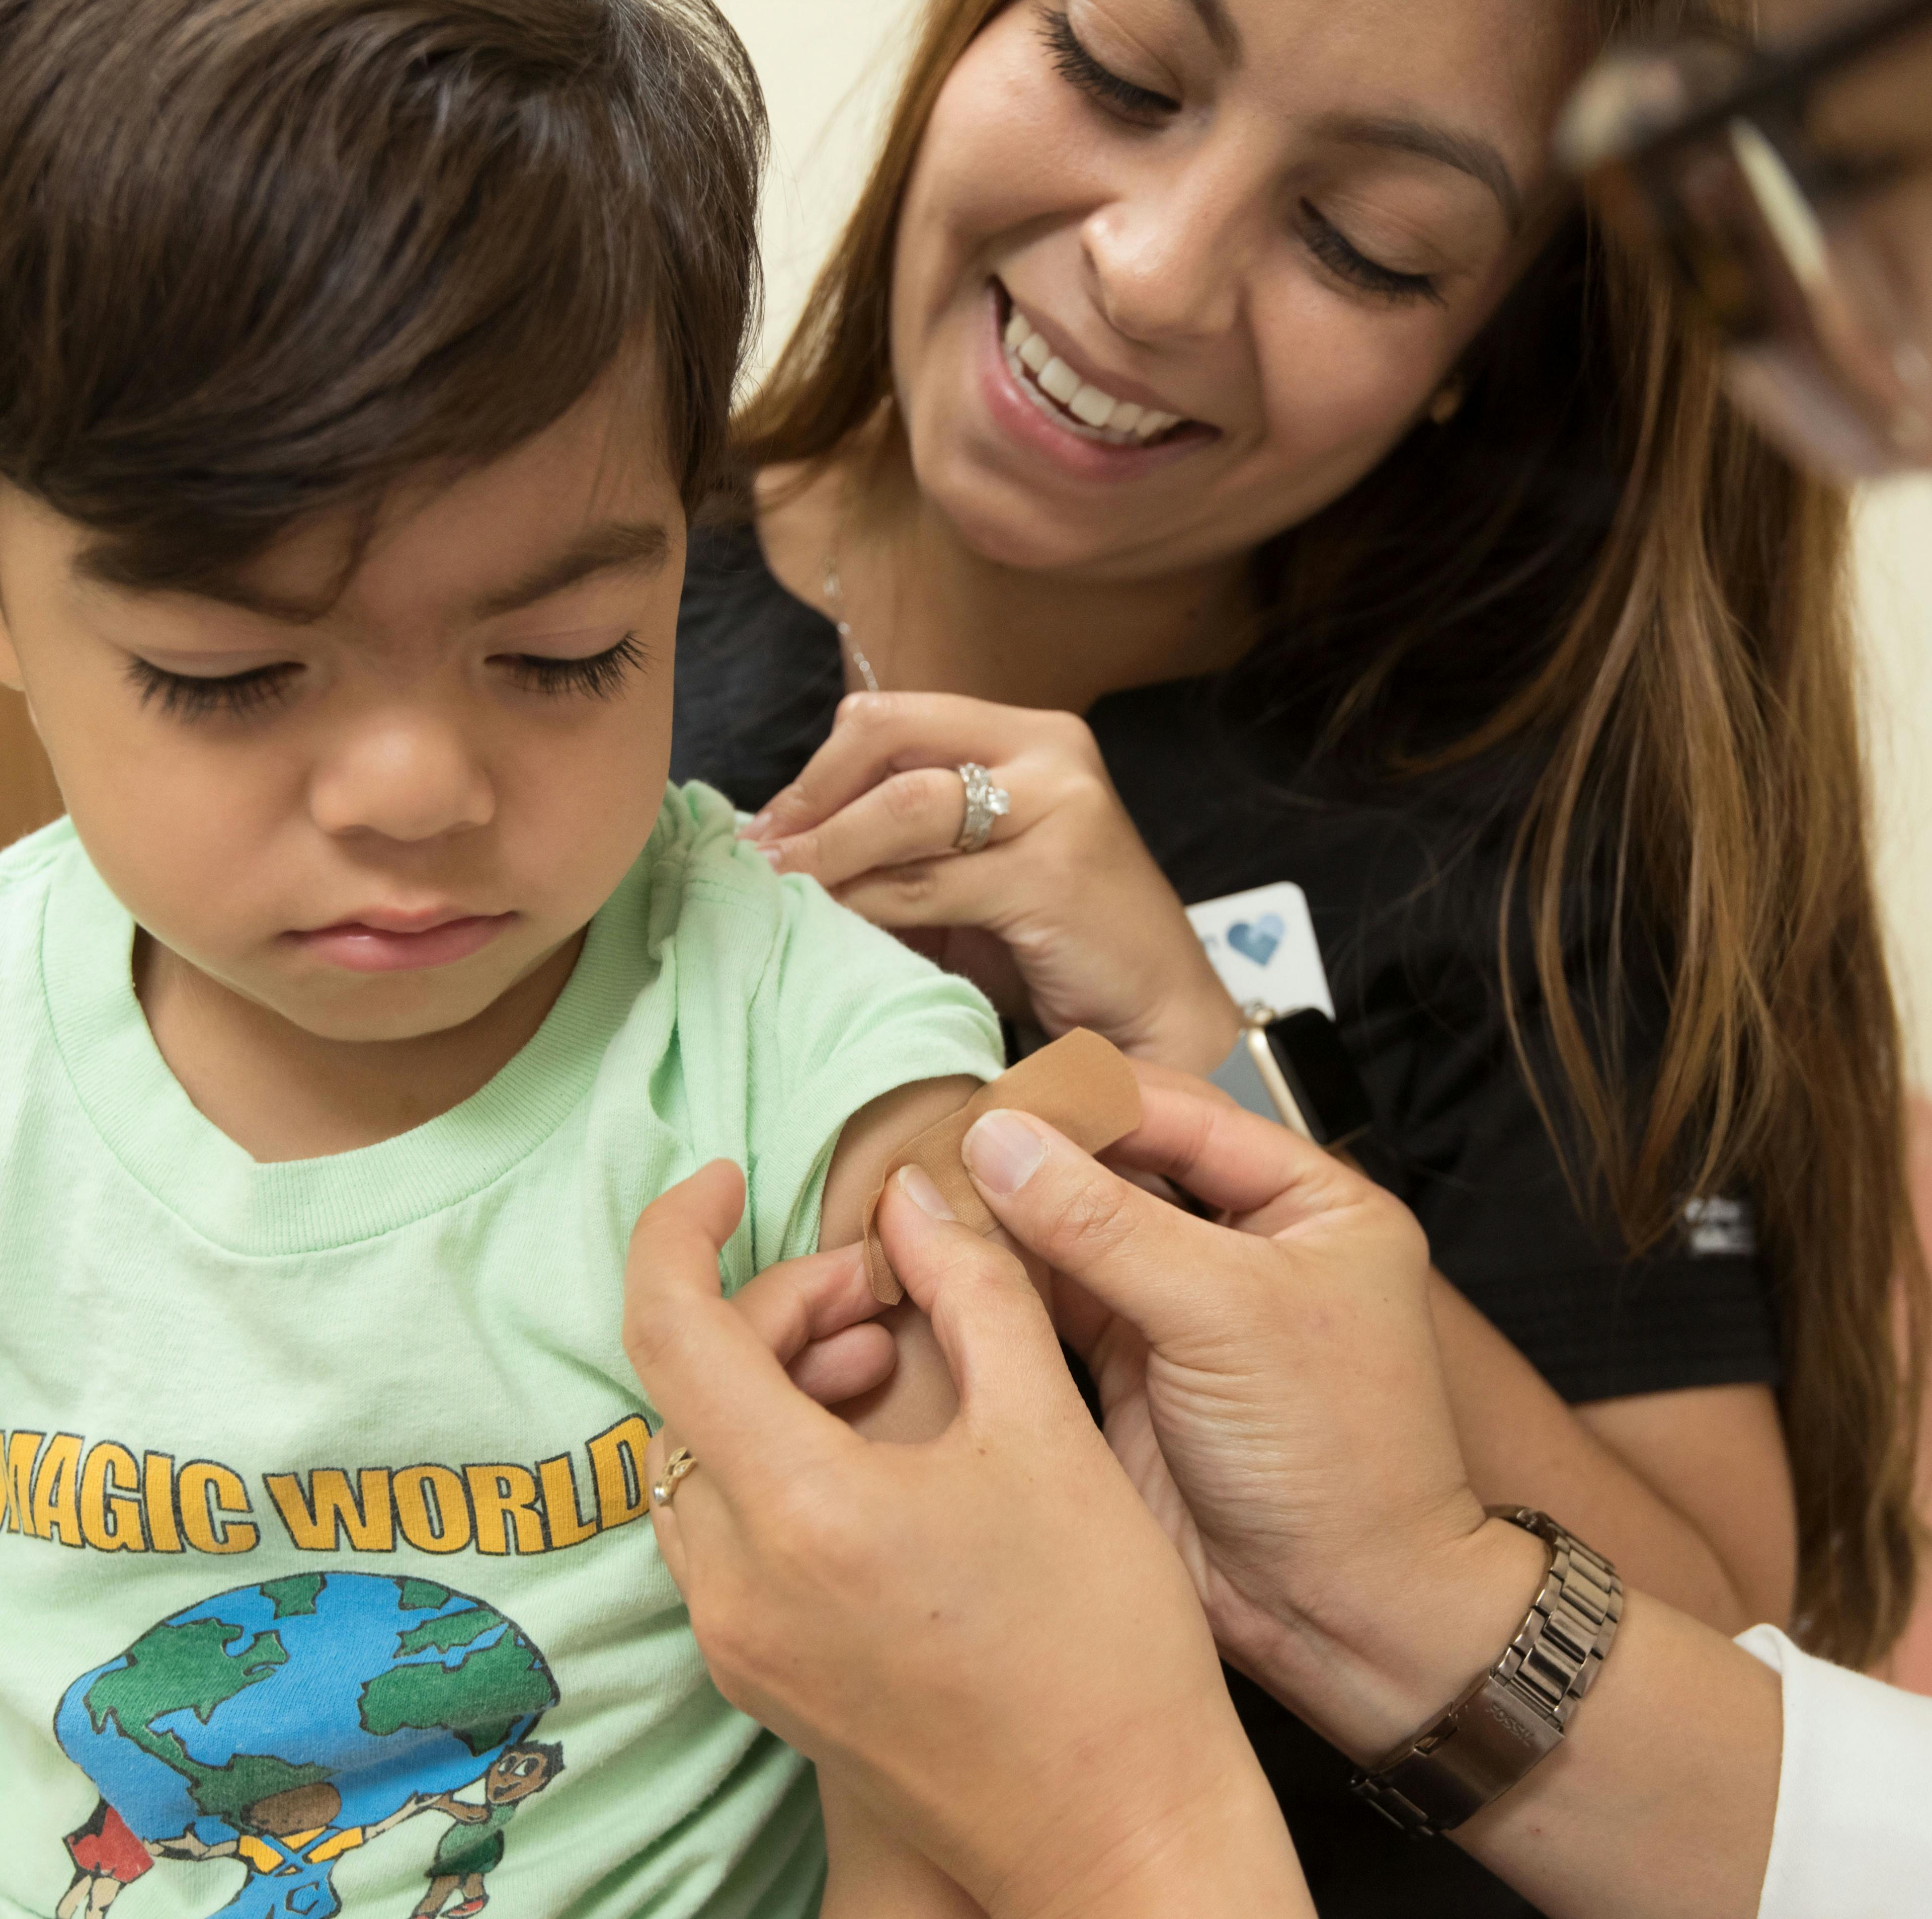 US Pediatric Flu Vaccinations Decreased in 2020